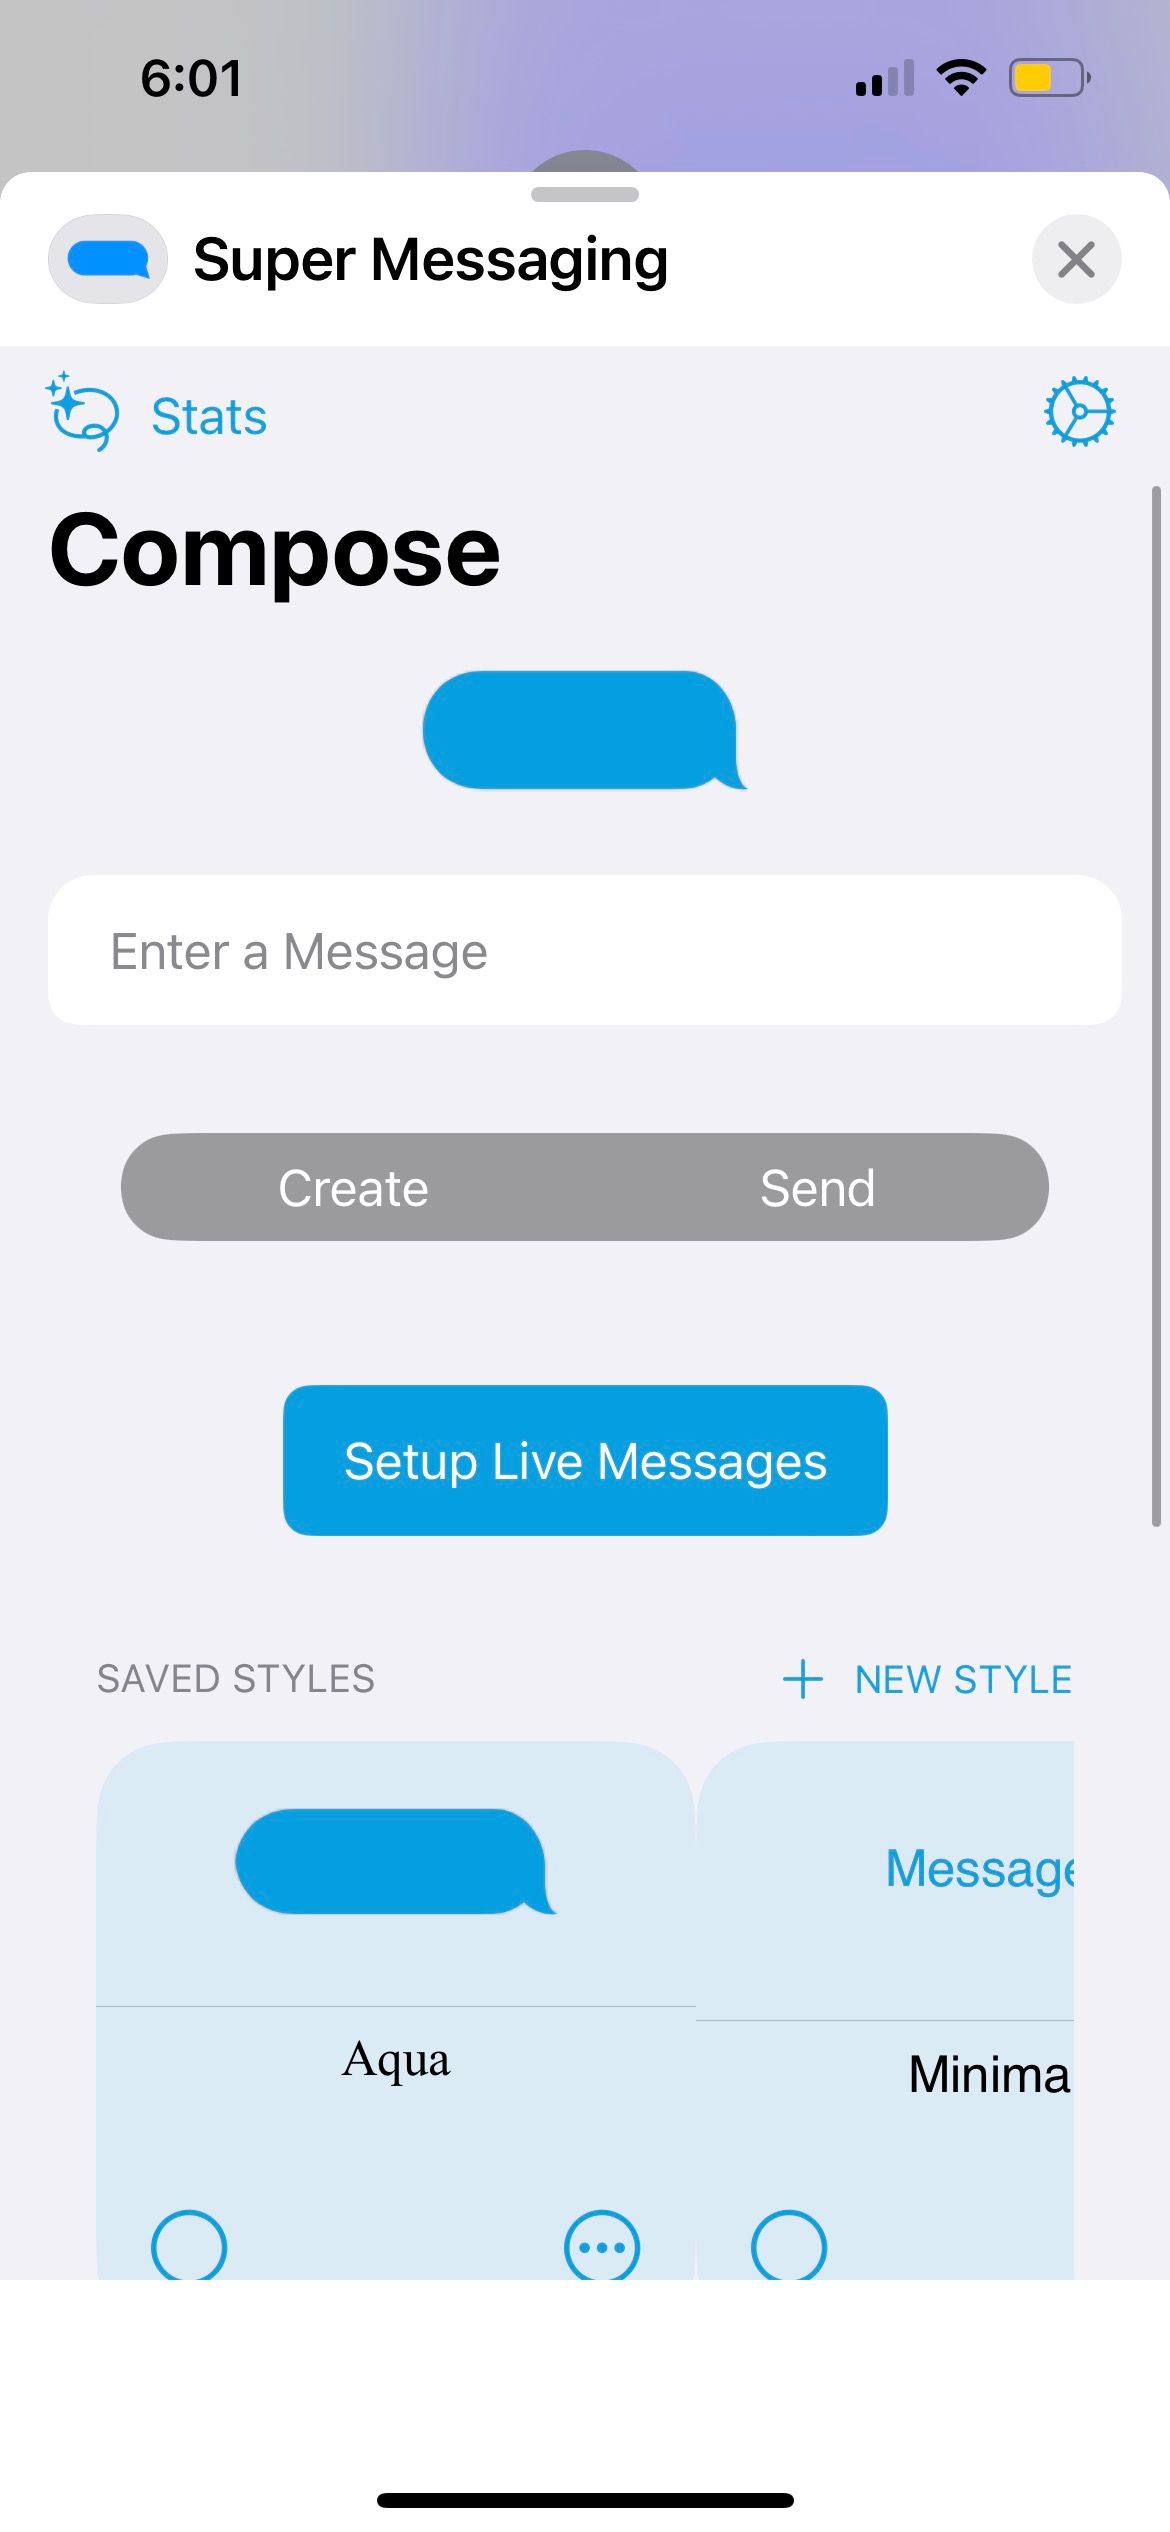 super messaging app interface